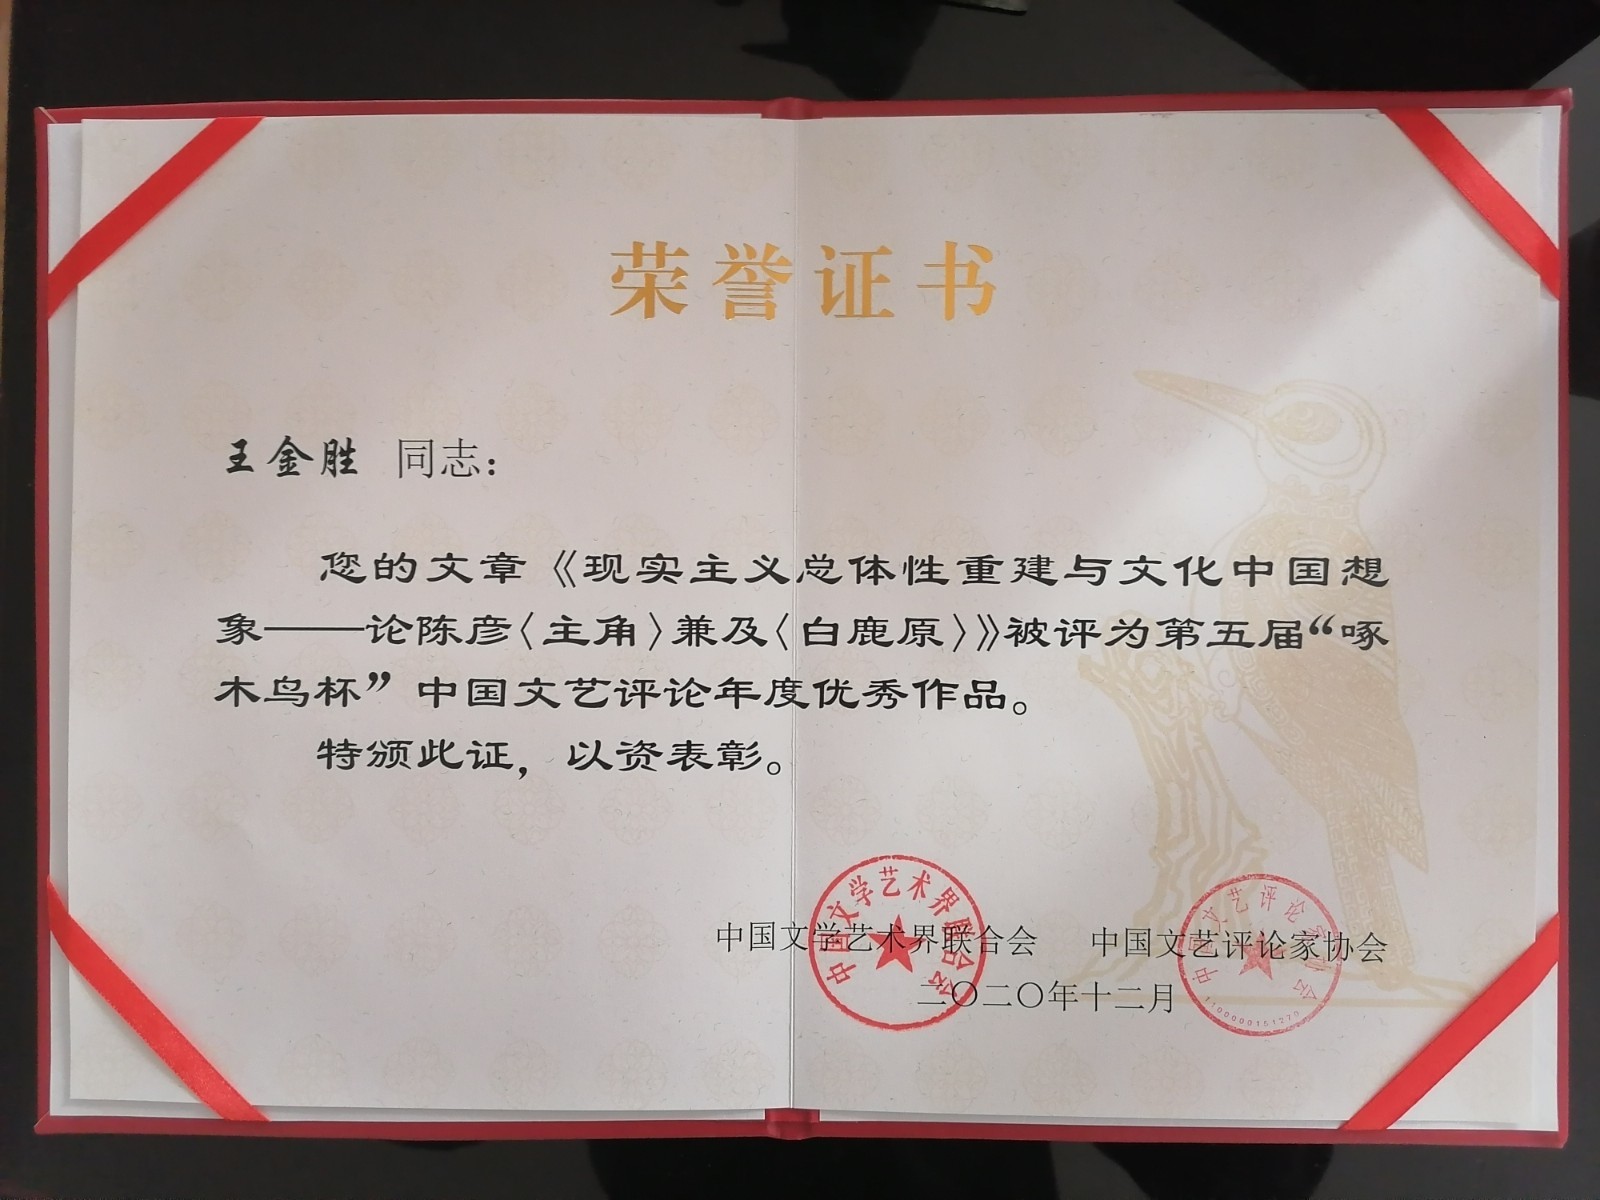 全省唯一青岛大学这位教授捧回中国文艺评论最高奖